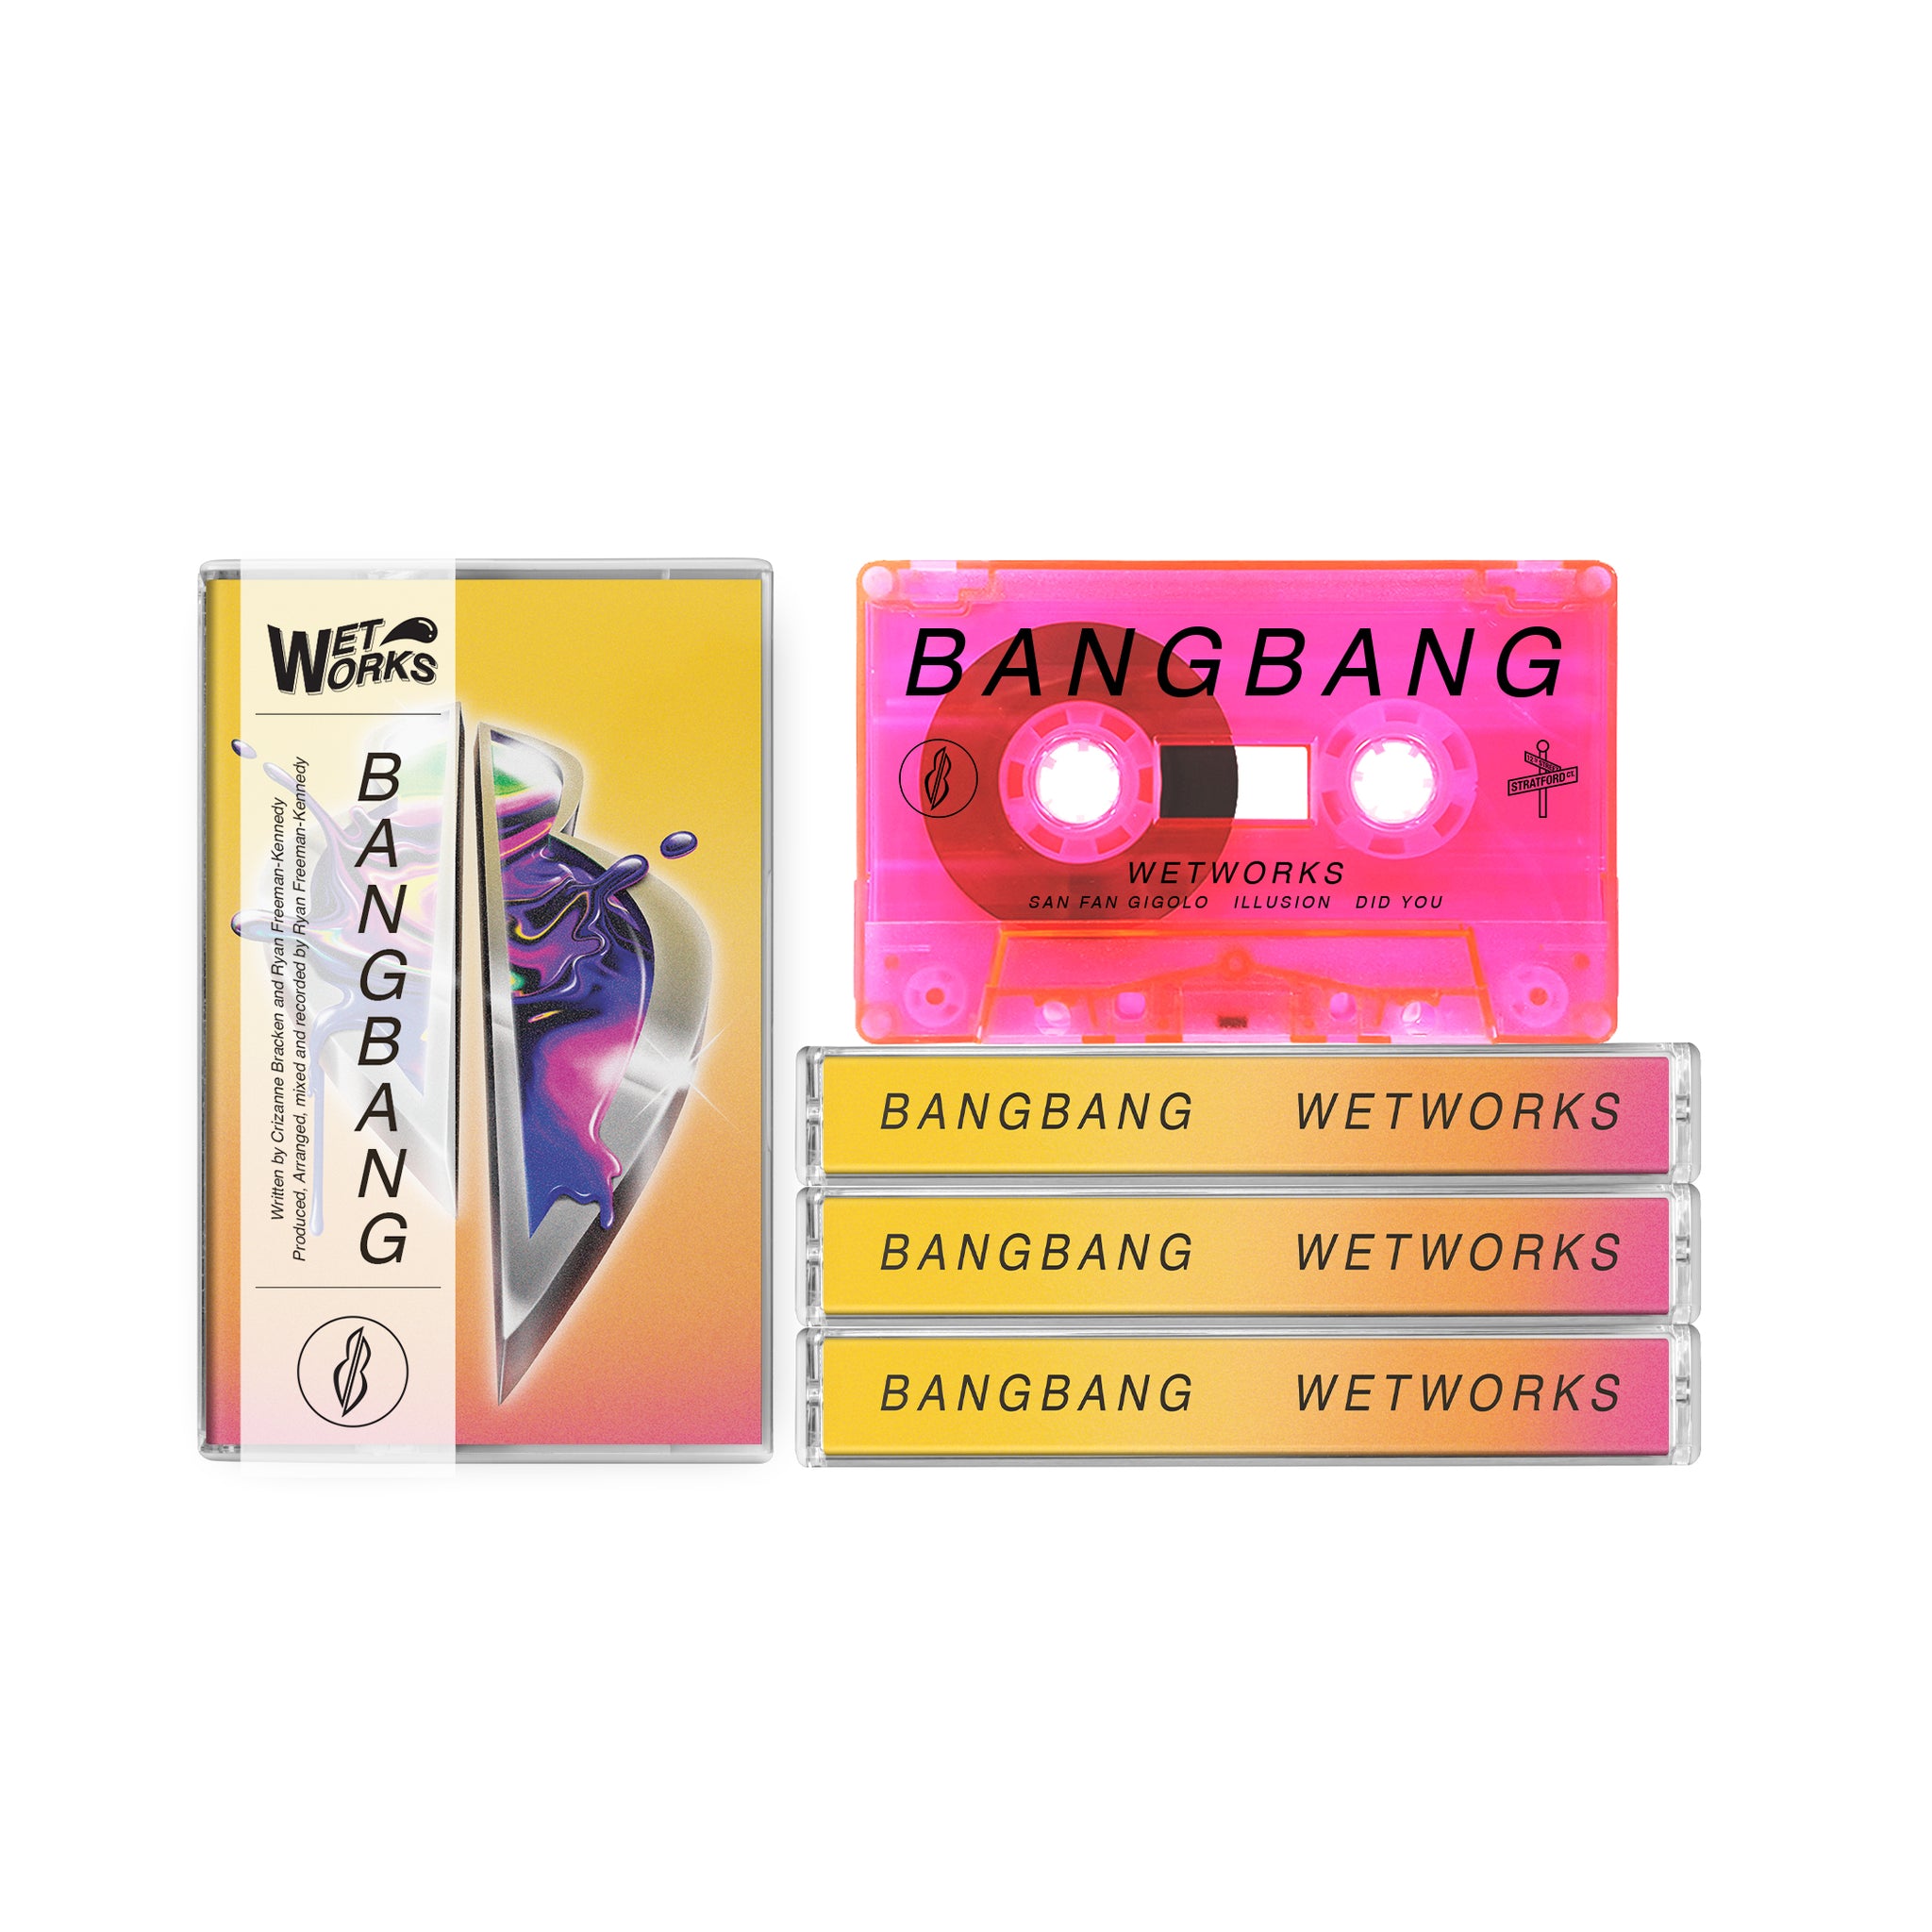 Bangbang - Wetworks (Paradise Pink)